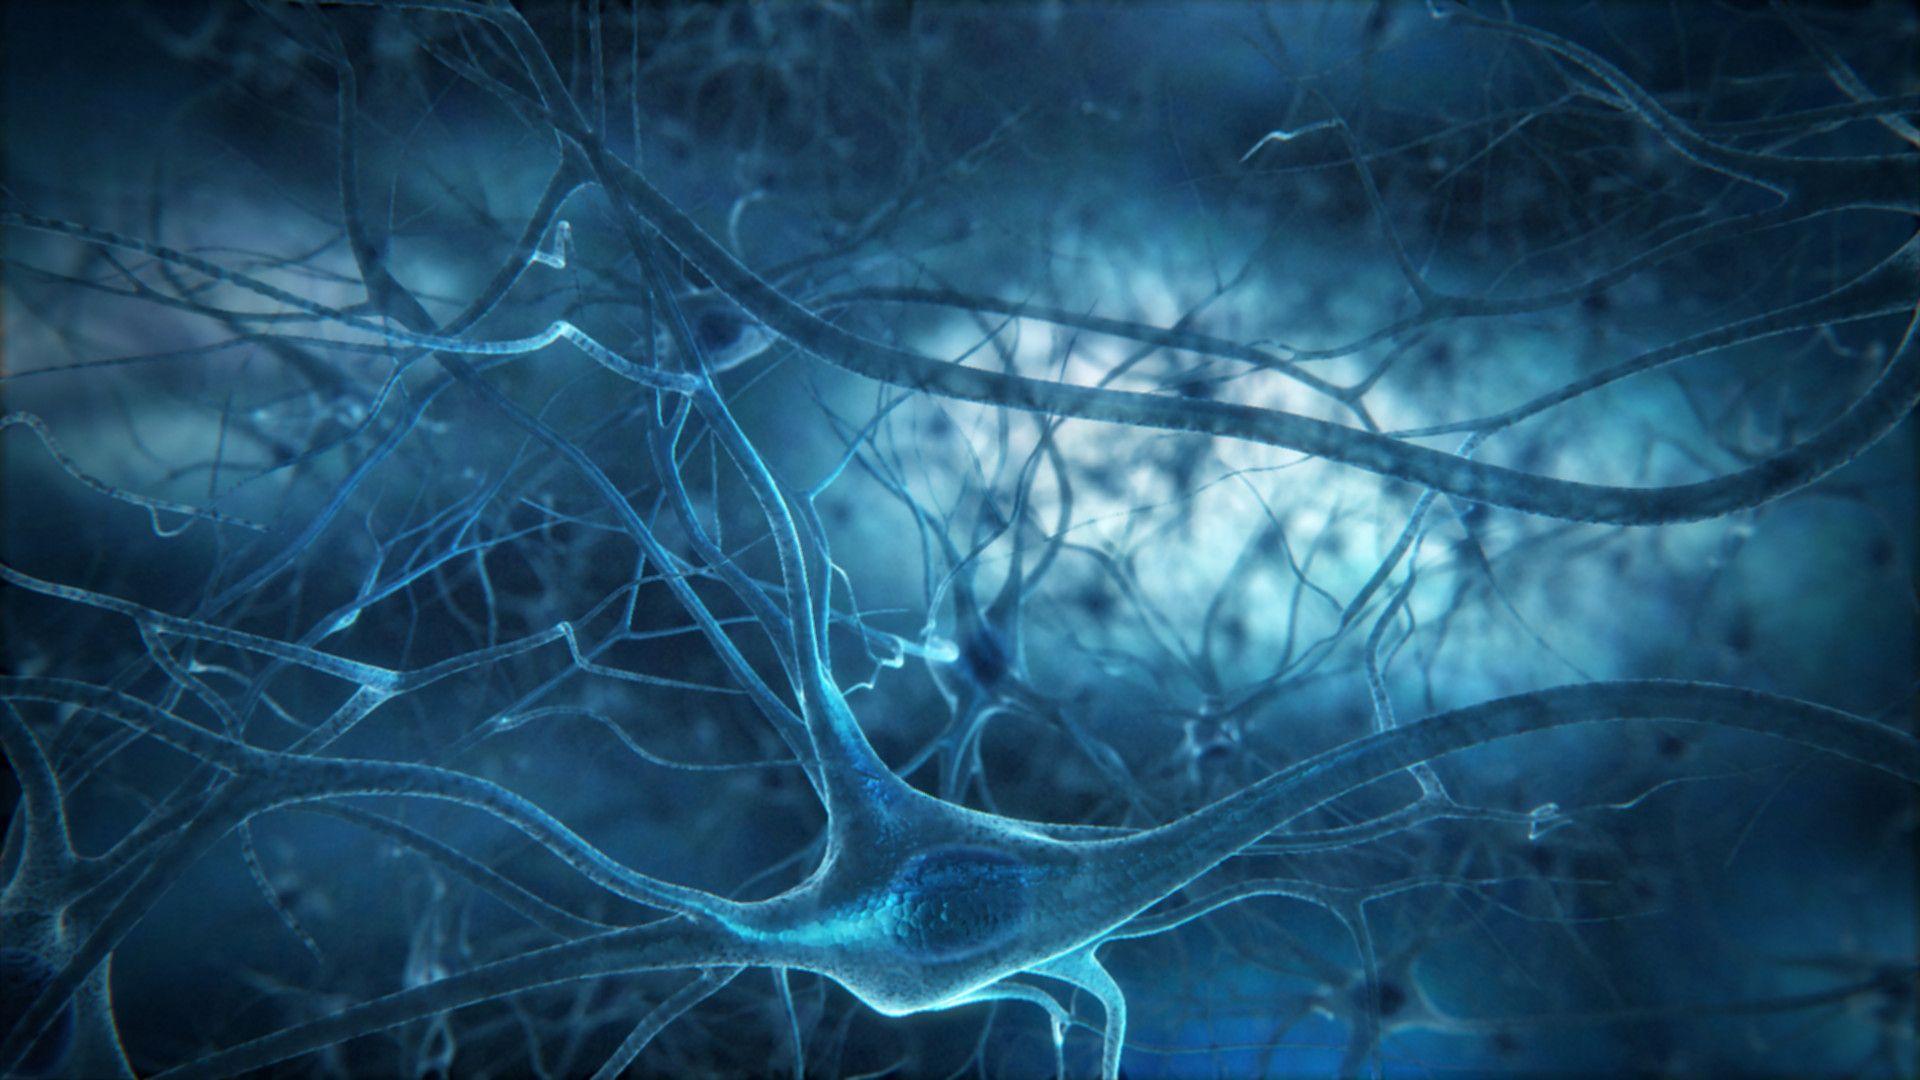 Discover more than 80 neuroscience wallpaper super hot - 3tdesign.edu.vn